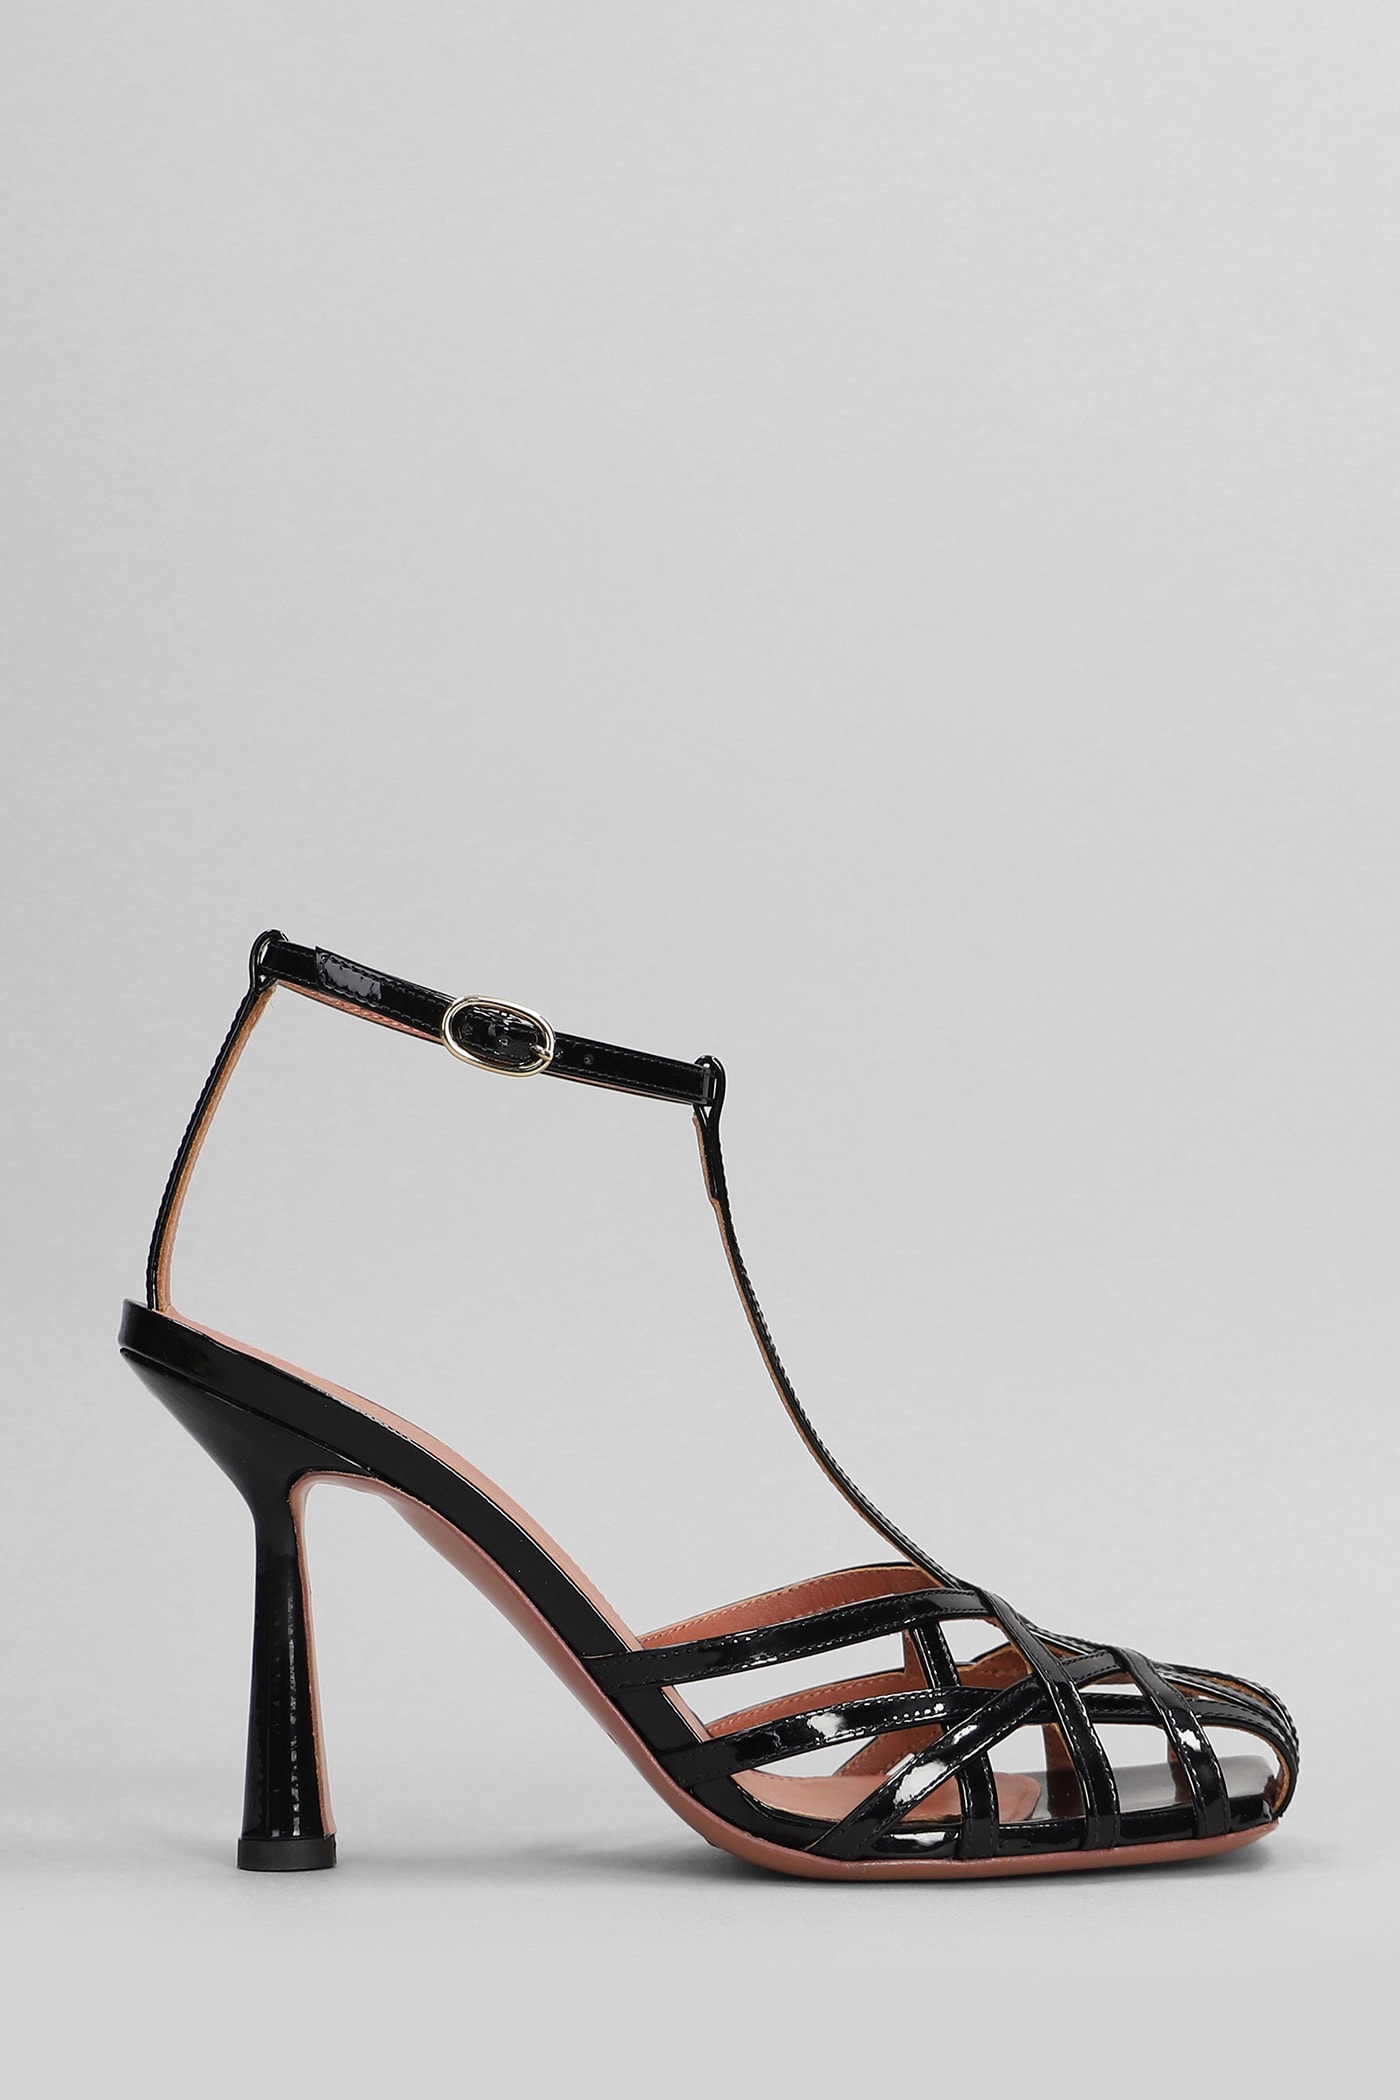 Aldo Castagna Lidia Sandals In Black Patent Leather